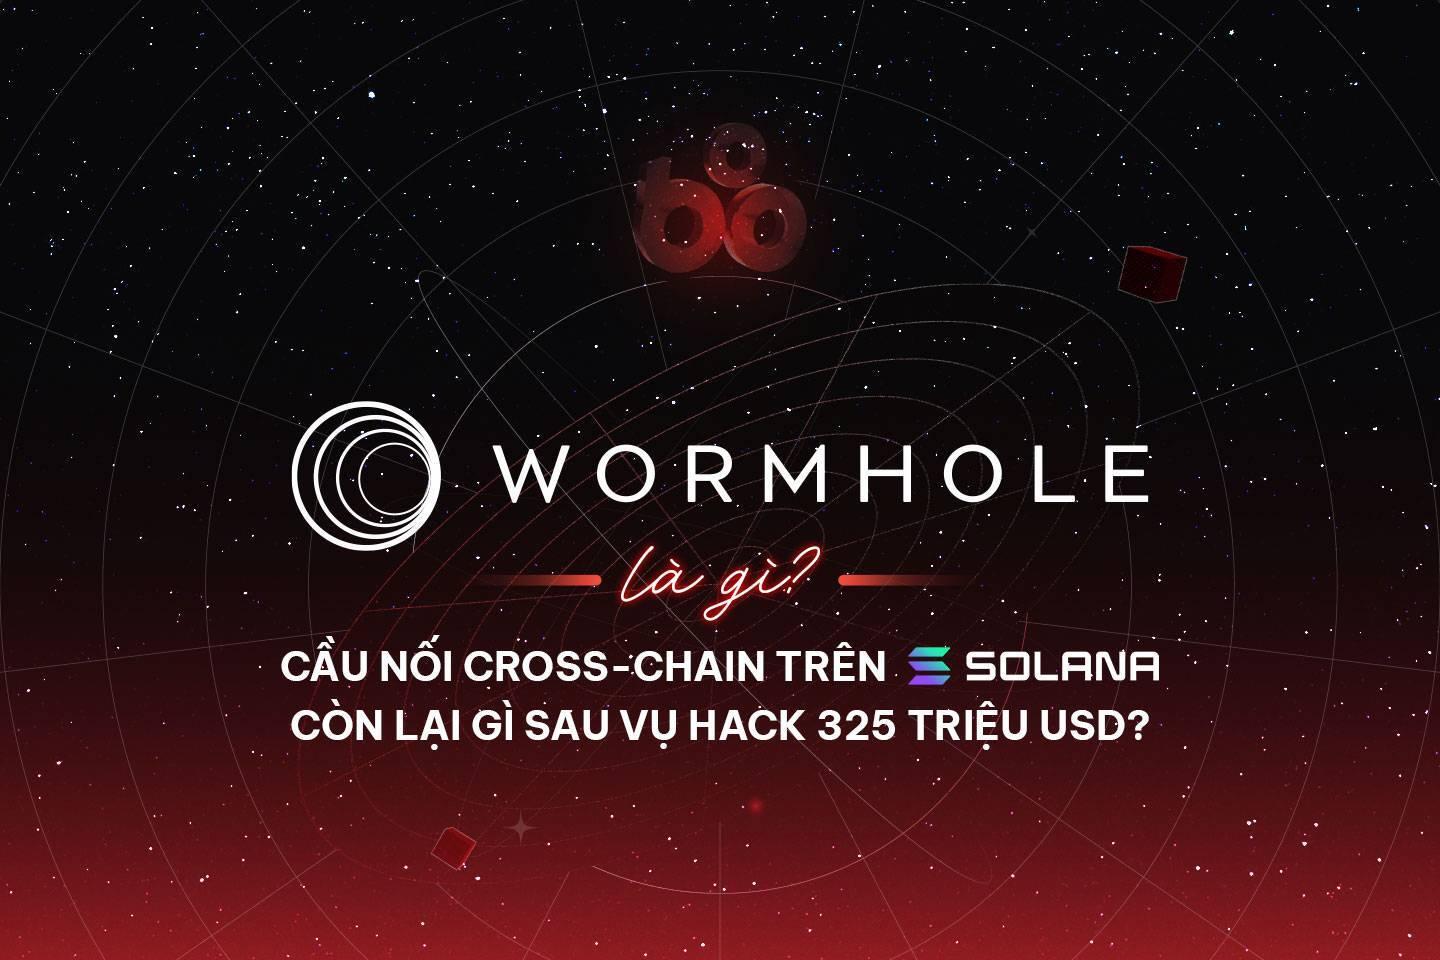 wormhole-la-gi-huong-dan-san-airdrop-tu-du-an-wormhole